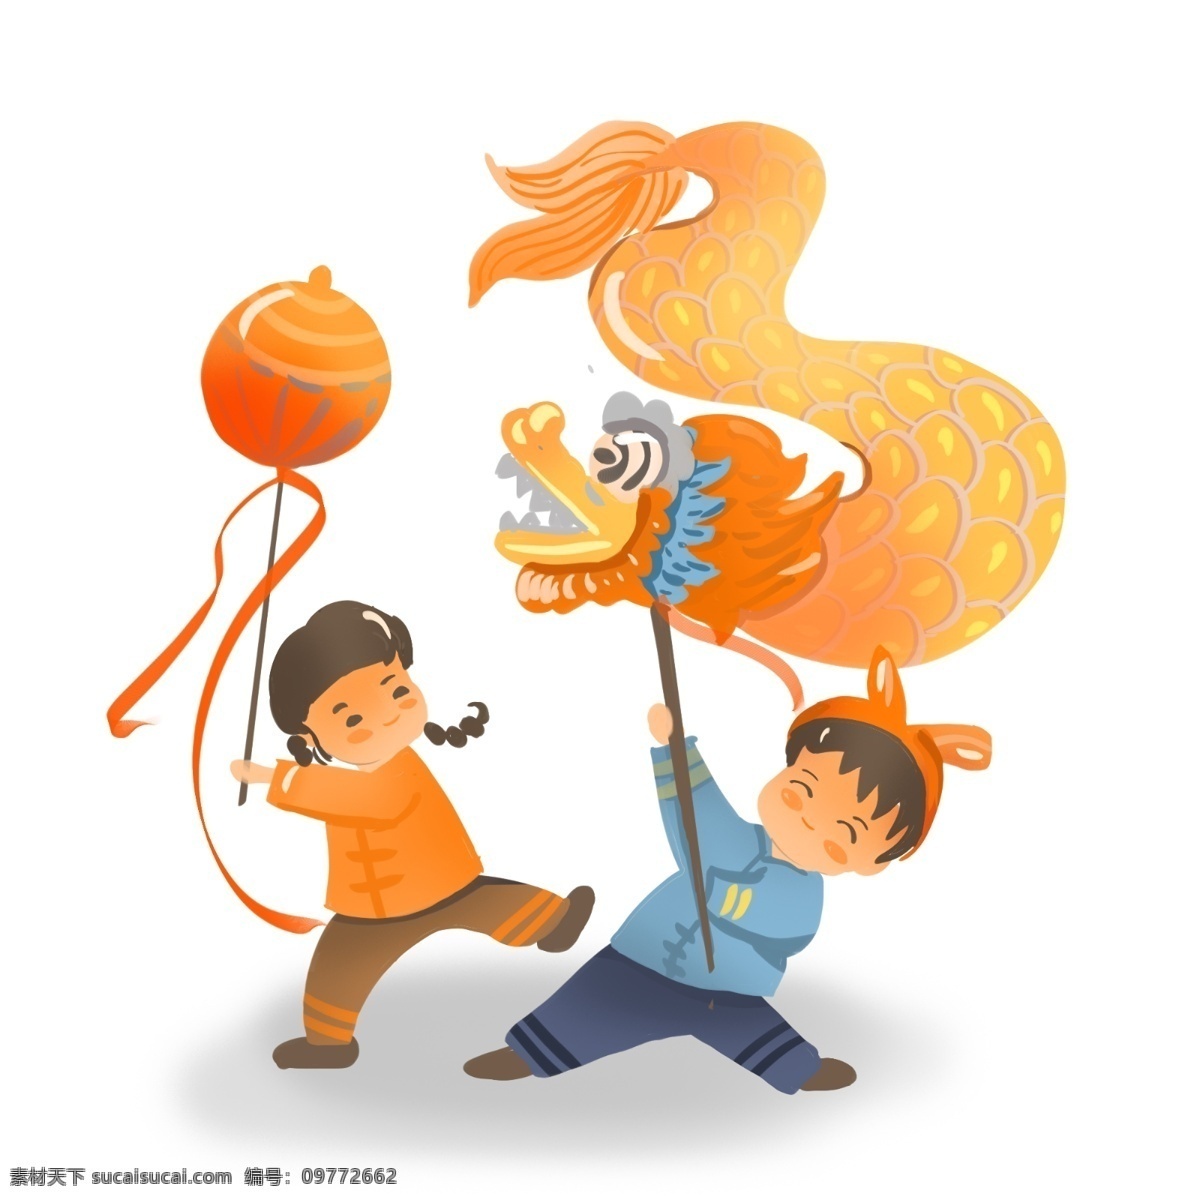 新年 舞龙舞狮 商业 插画 元素 2019 小清新 喜庆